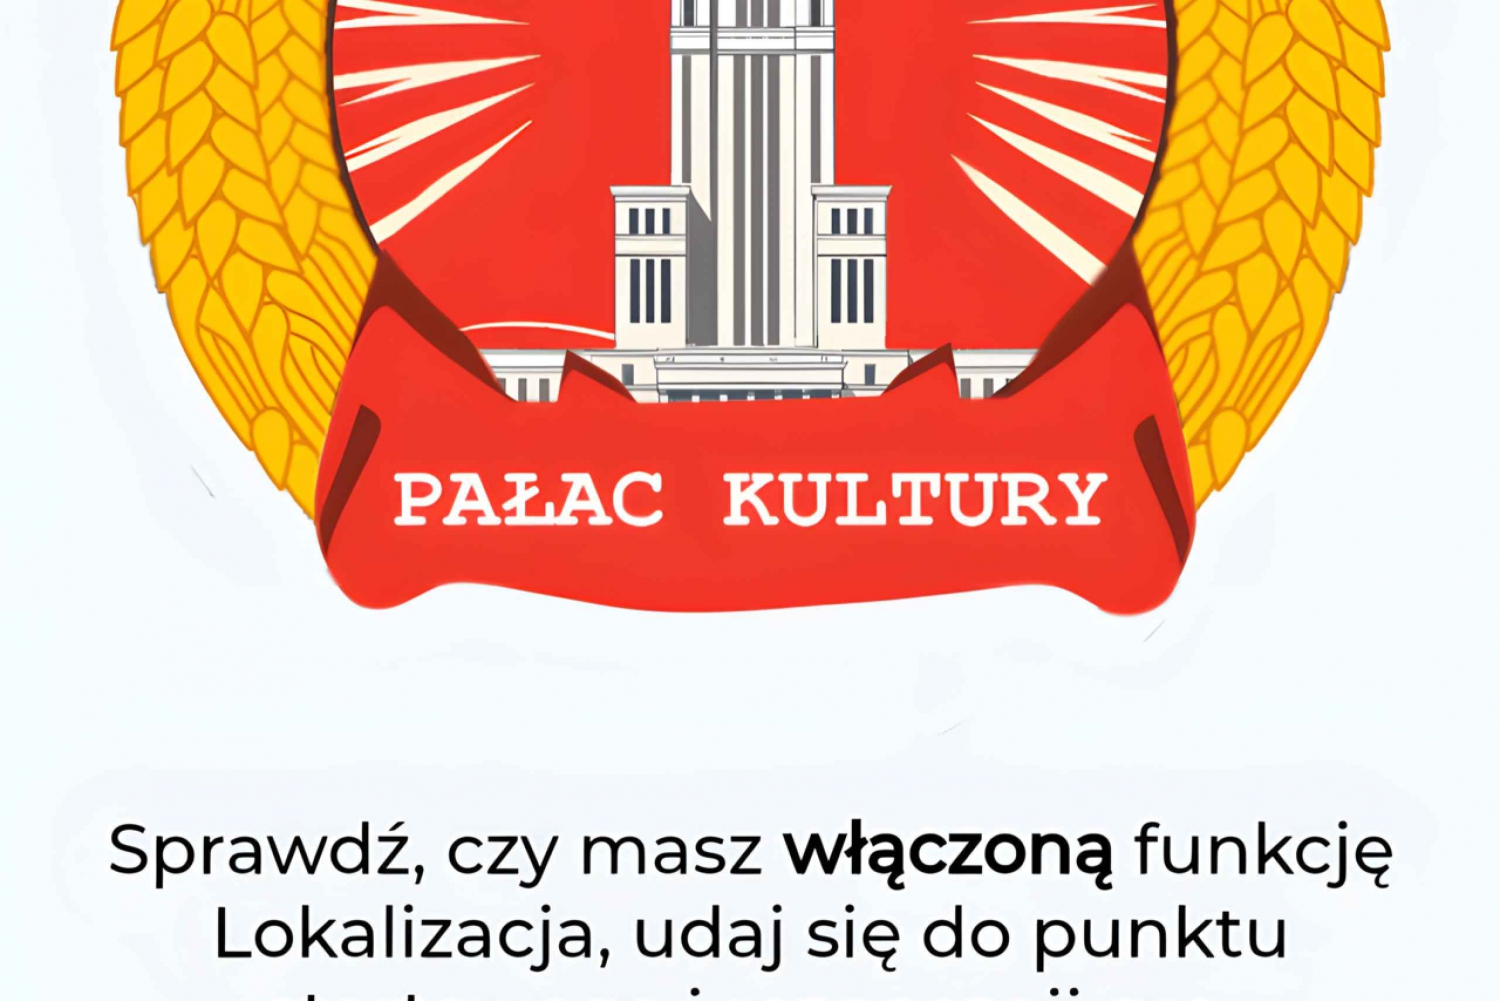 Warszawa: Misja Pałac Kultury - gra/przewodnik mobilny